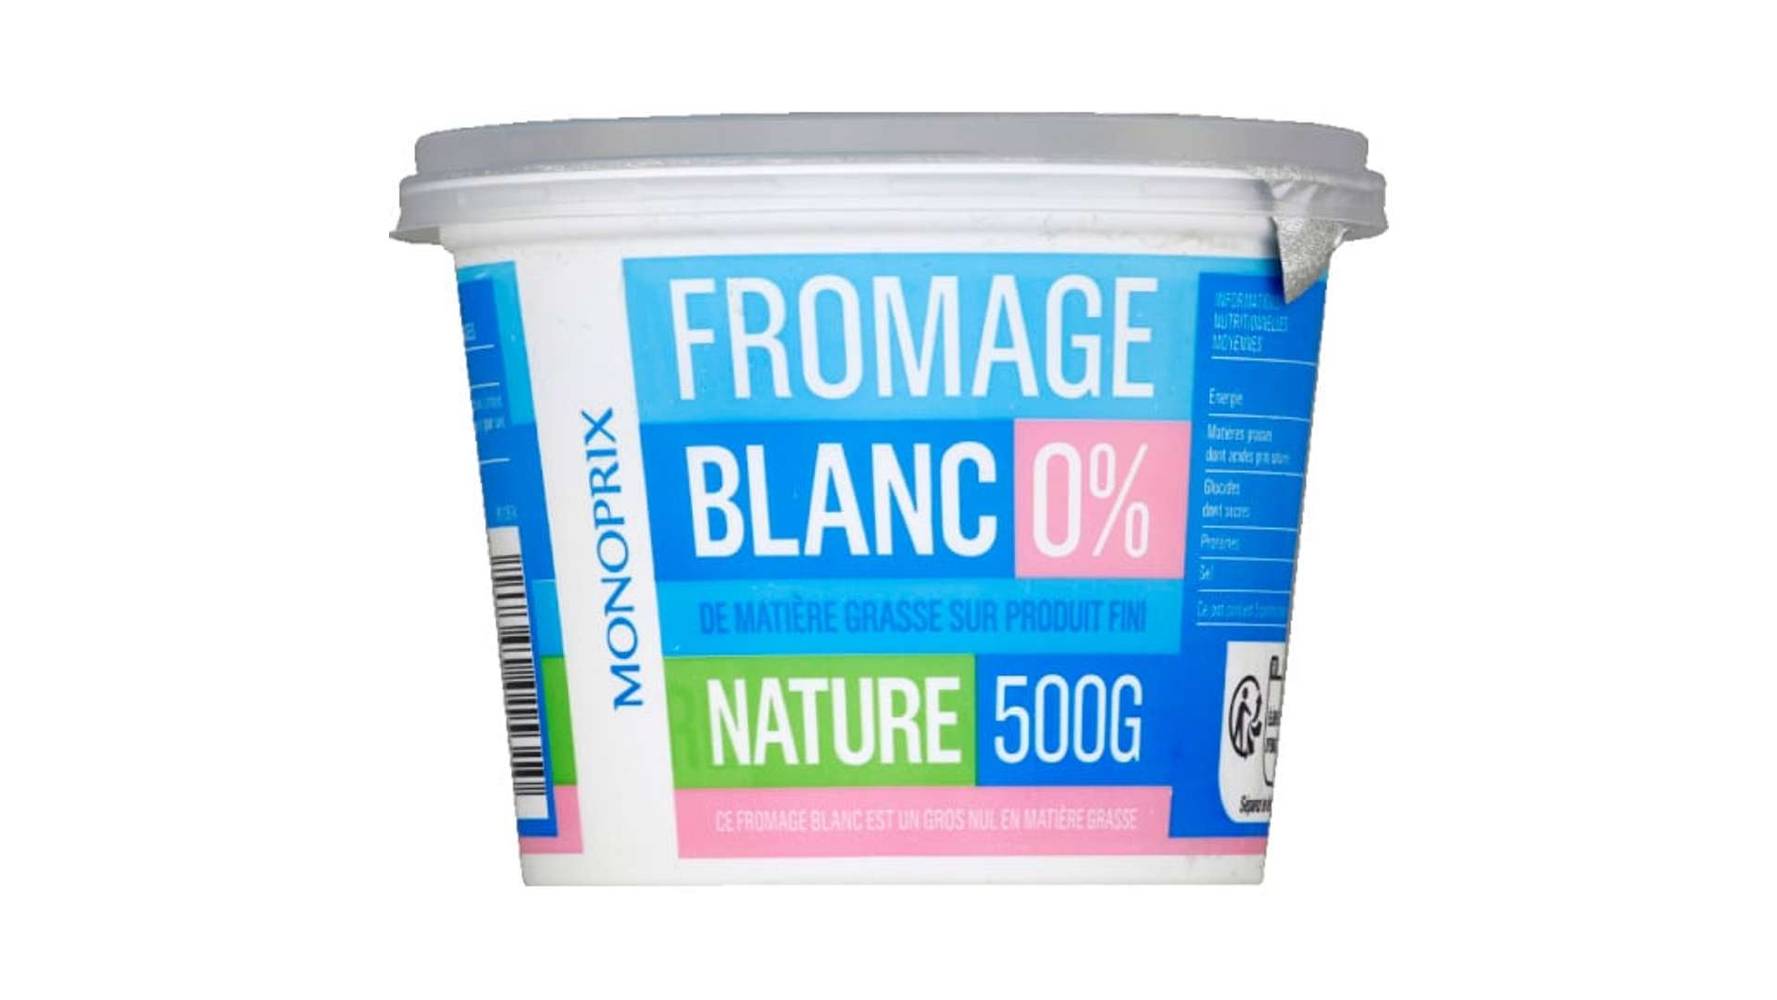 Monoprix Fromage blanc 0% matières grasses Le pot de 500g